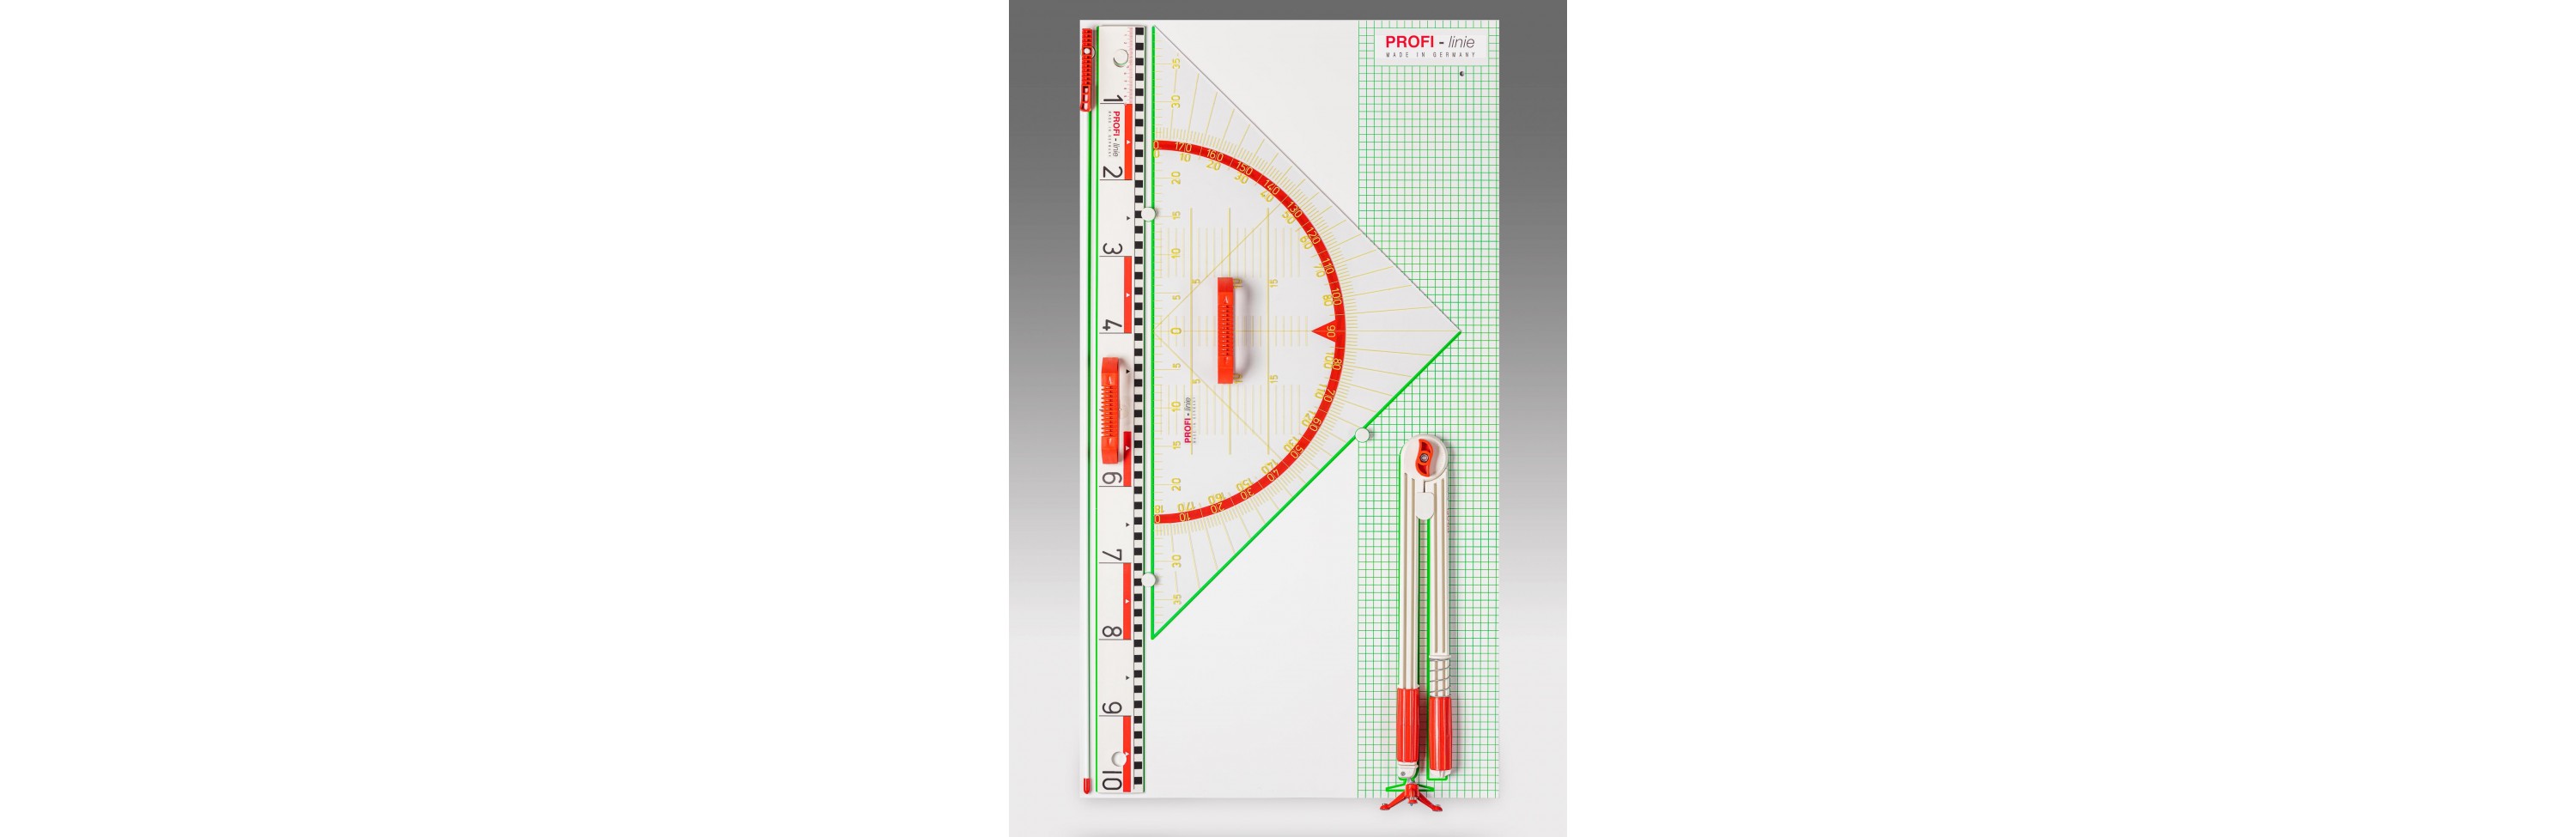 Wissner® aktiv lernen - Wandtafelgerätesatz PROFI-linie II magn (mit 80 cm Geowinkel) RE-Plastic®